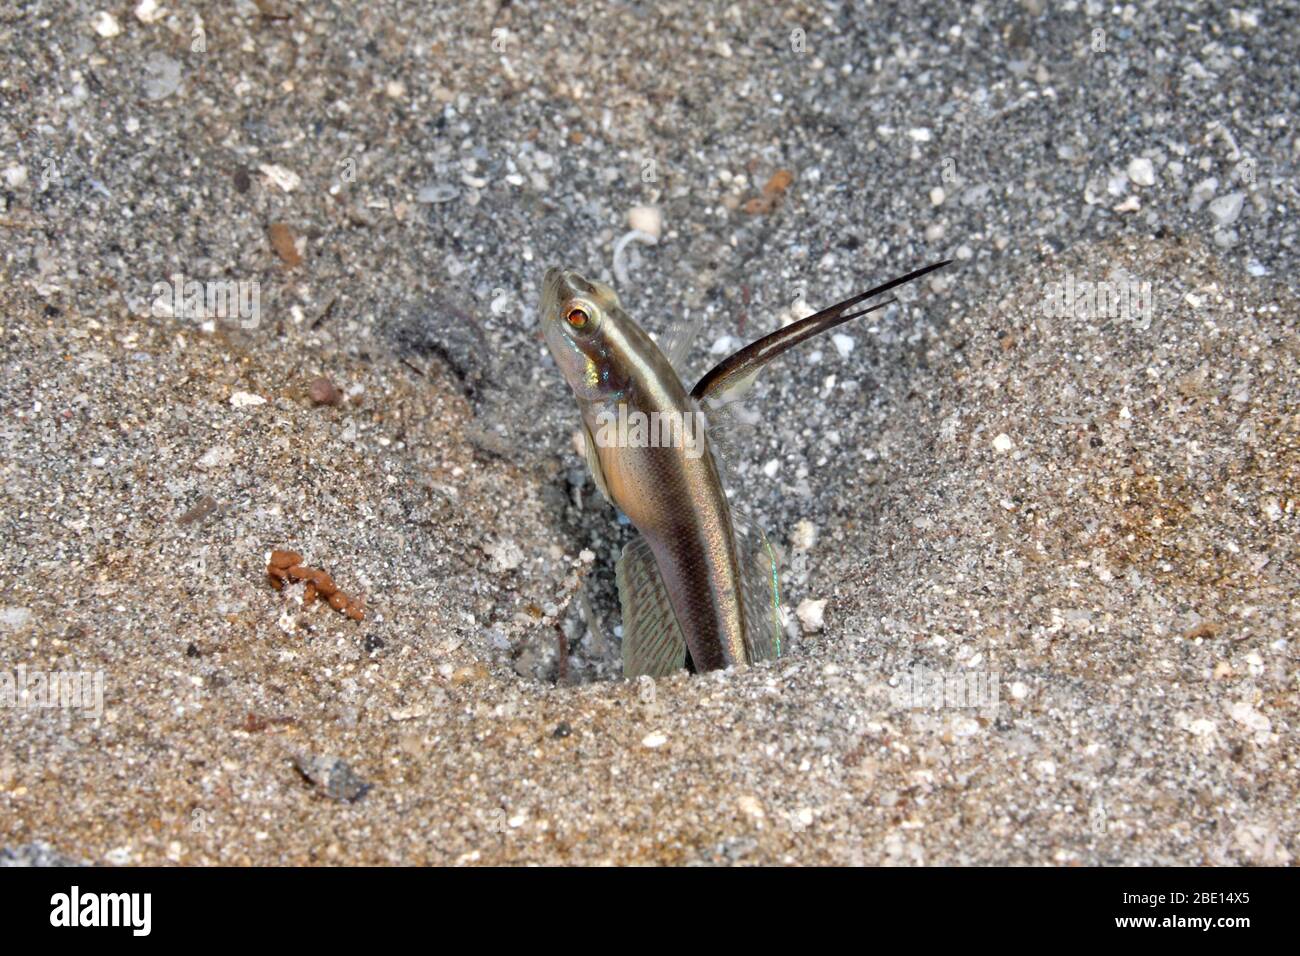 Shrimpgoby de Lachner, également connu sous le nom de Spear Shrimpgoby noir, Myersina lachneri. Pemuteran, Bali, Indonésie. Mer de Bali, Océan Indien Banque D'Images